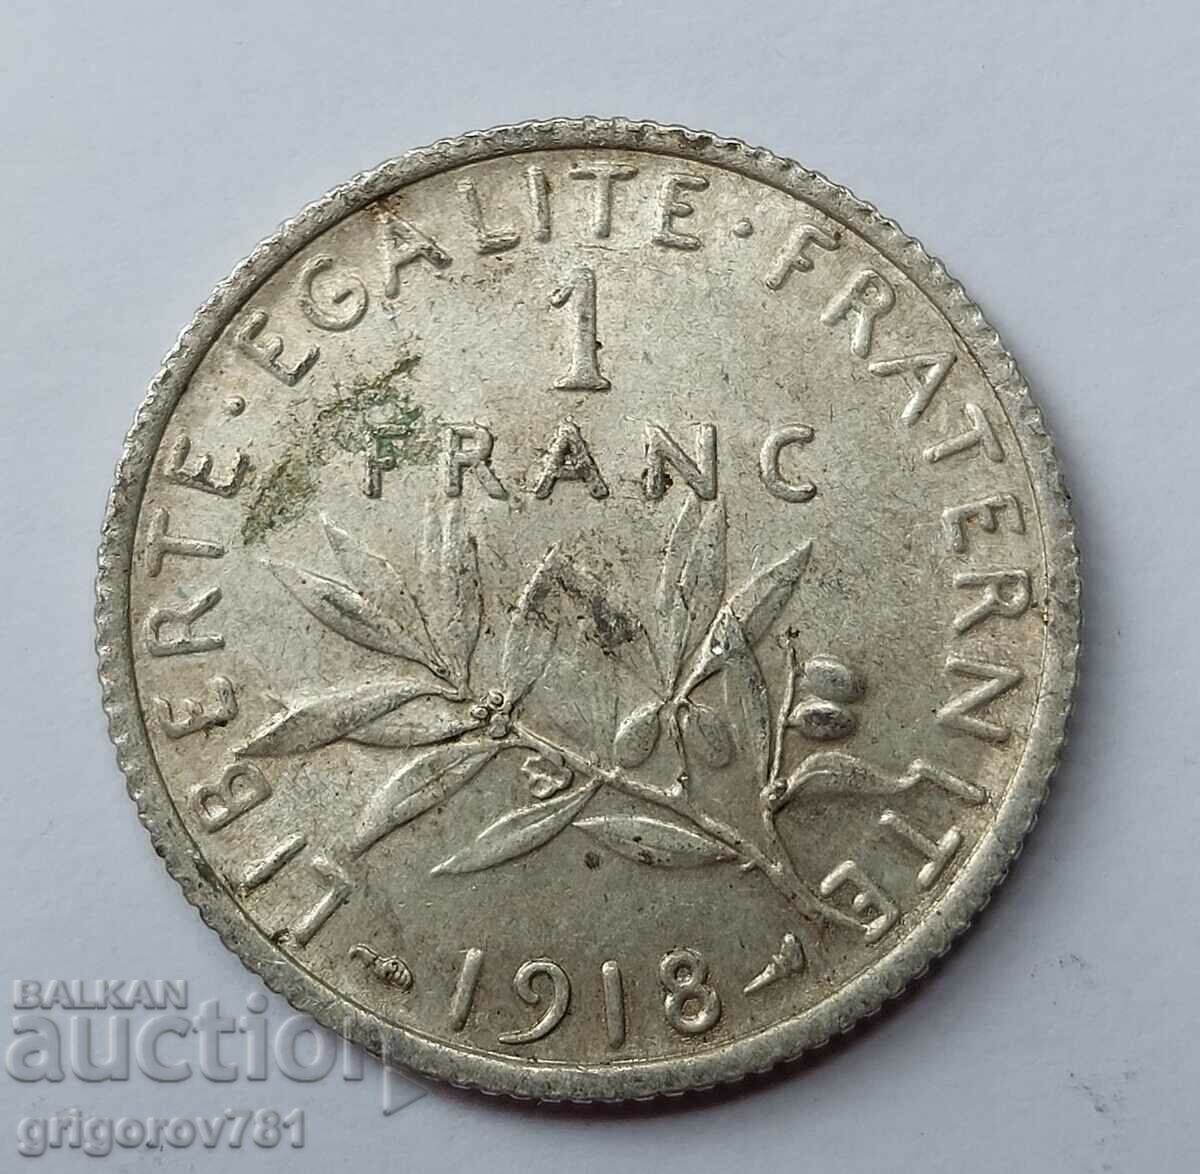 Ασημένιο 1 φράγκου Γαλλία 1918 - ασημένιο νόμισμα №22